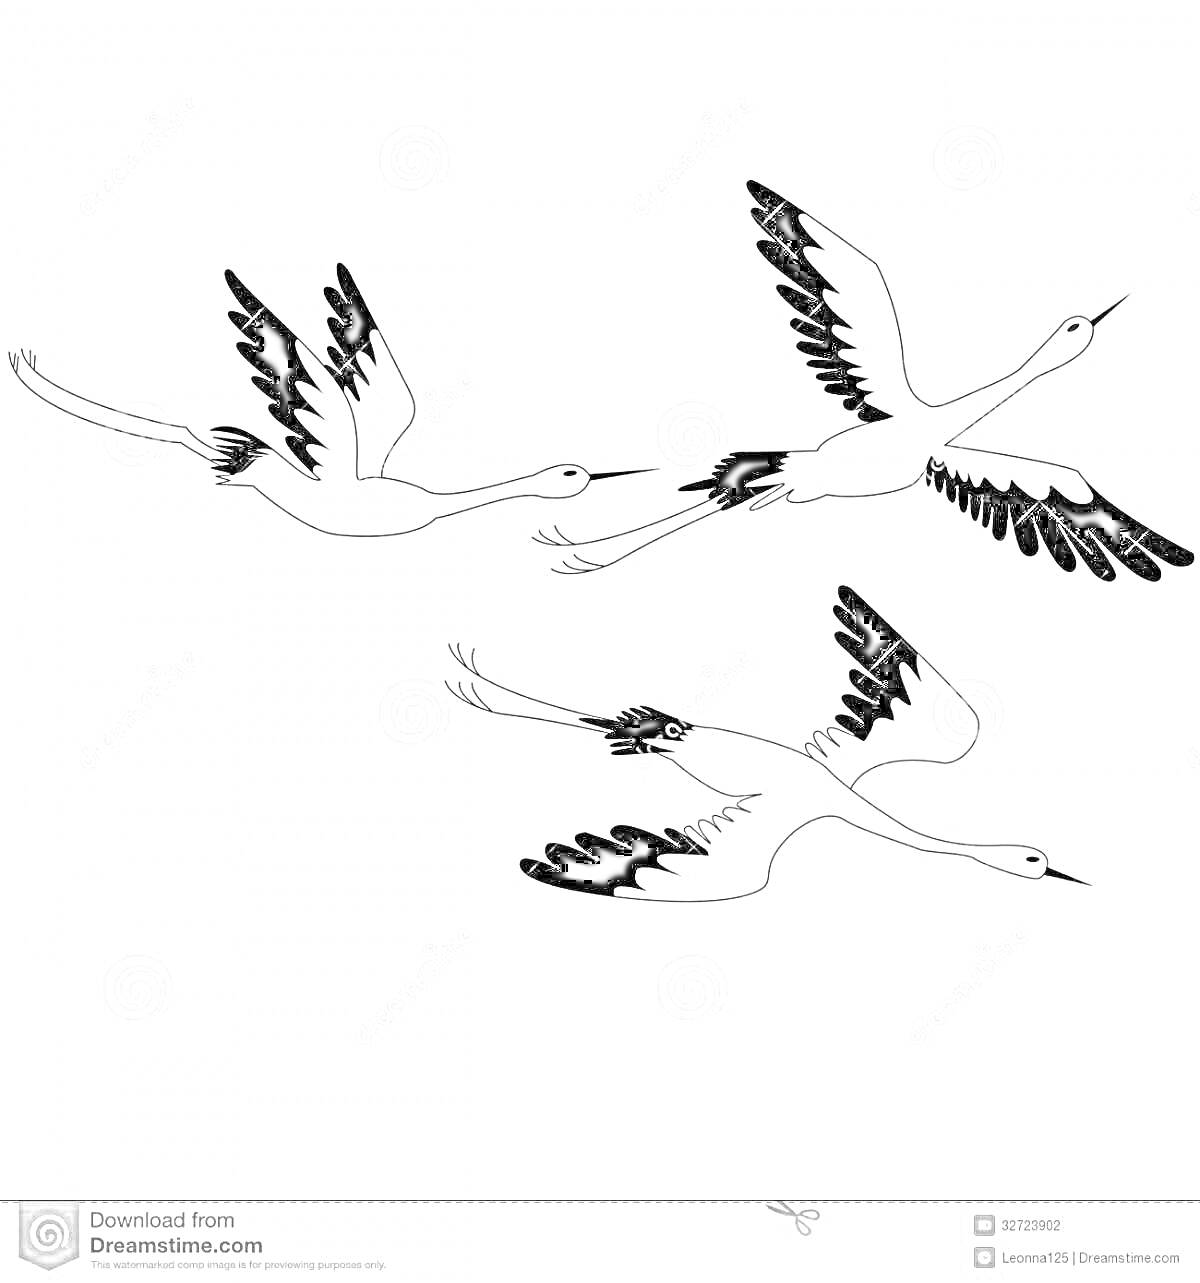 Раскраска Три летящих журавля с черными перьями на крыльях